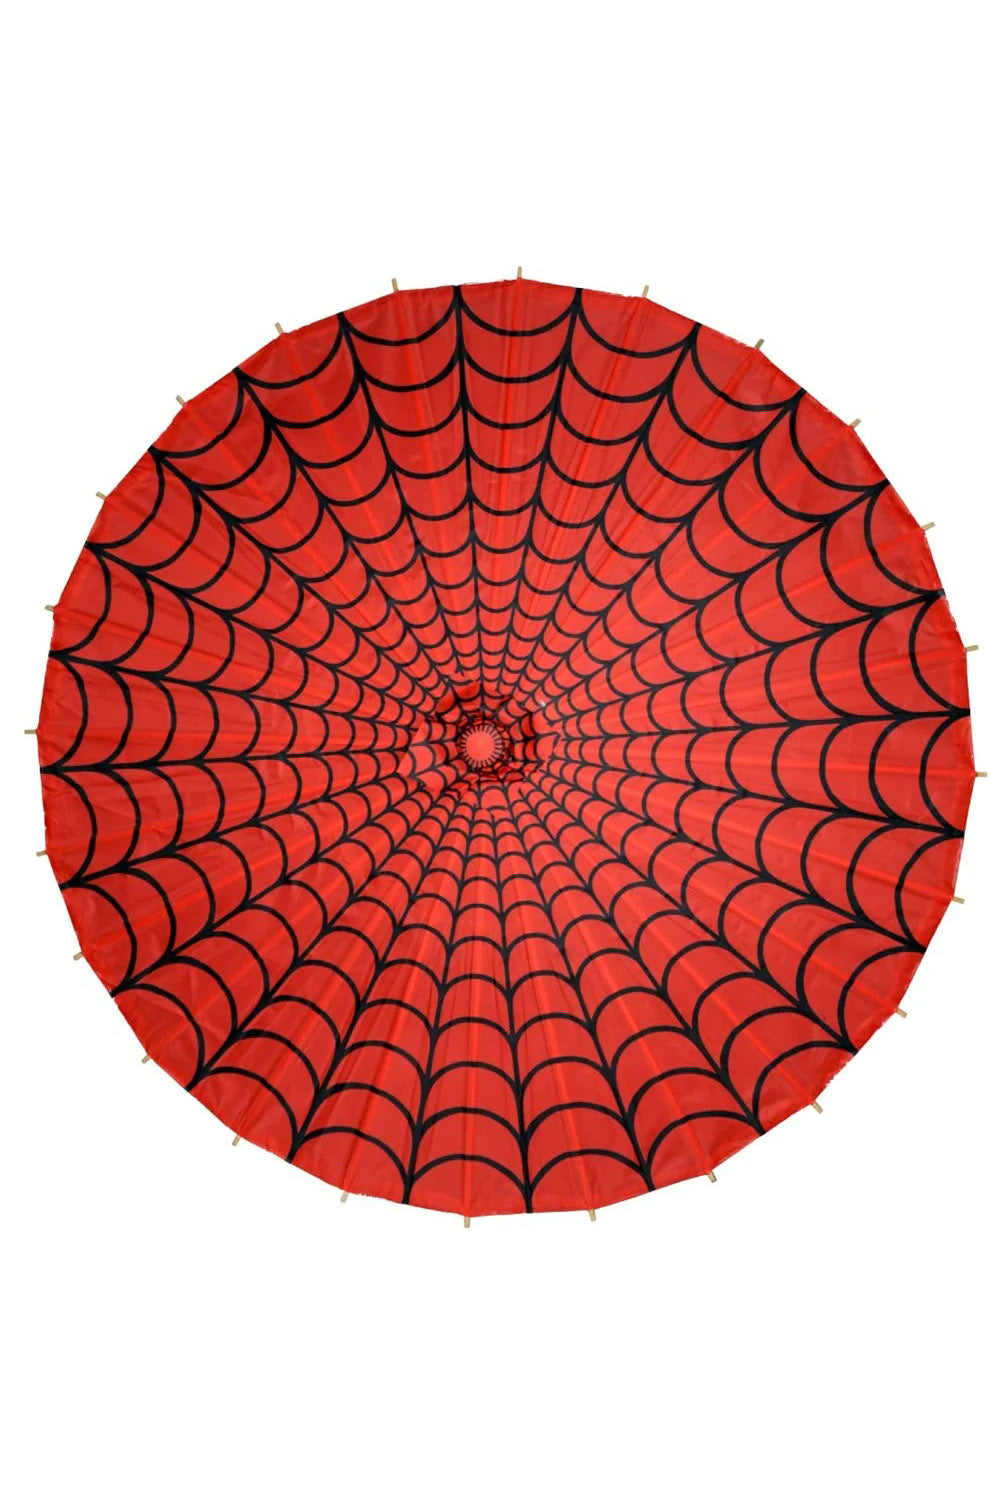 Spiderweb Fabric Parasol [RED/BLACK]